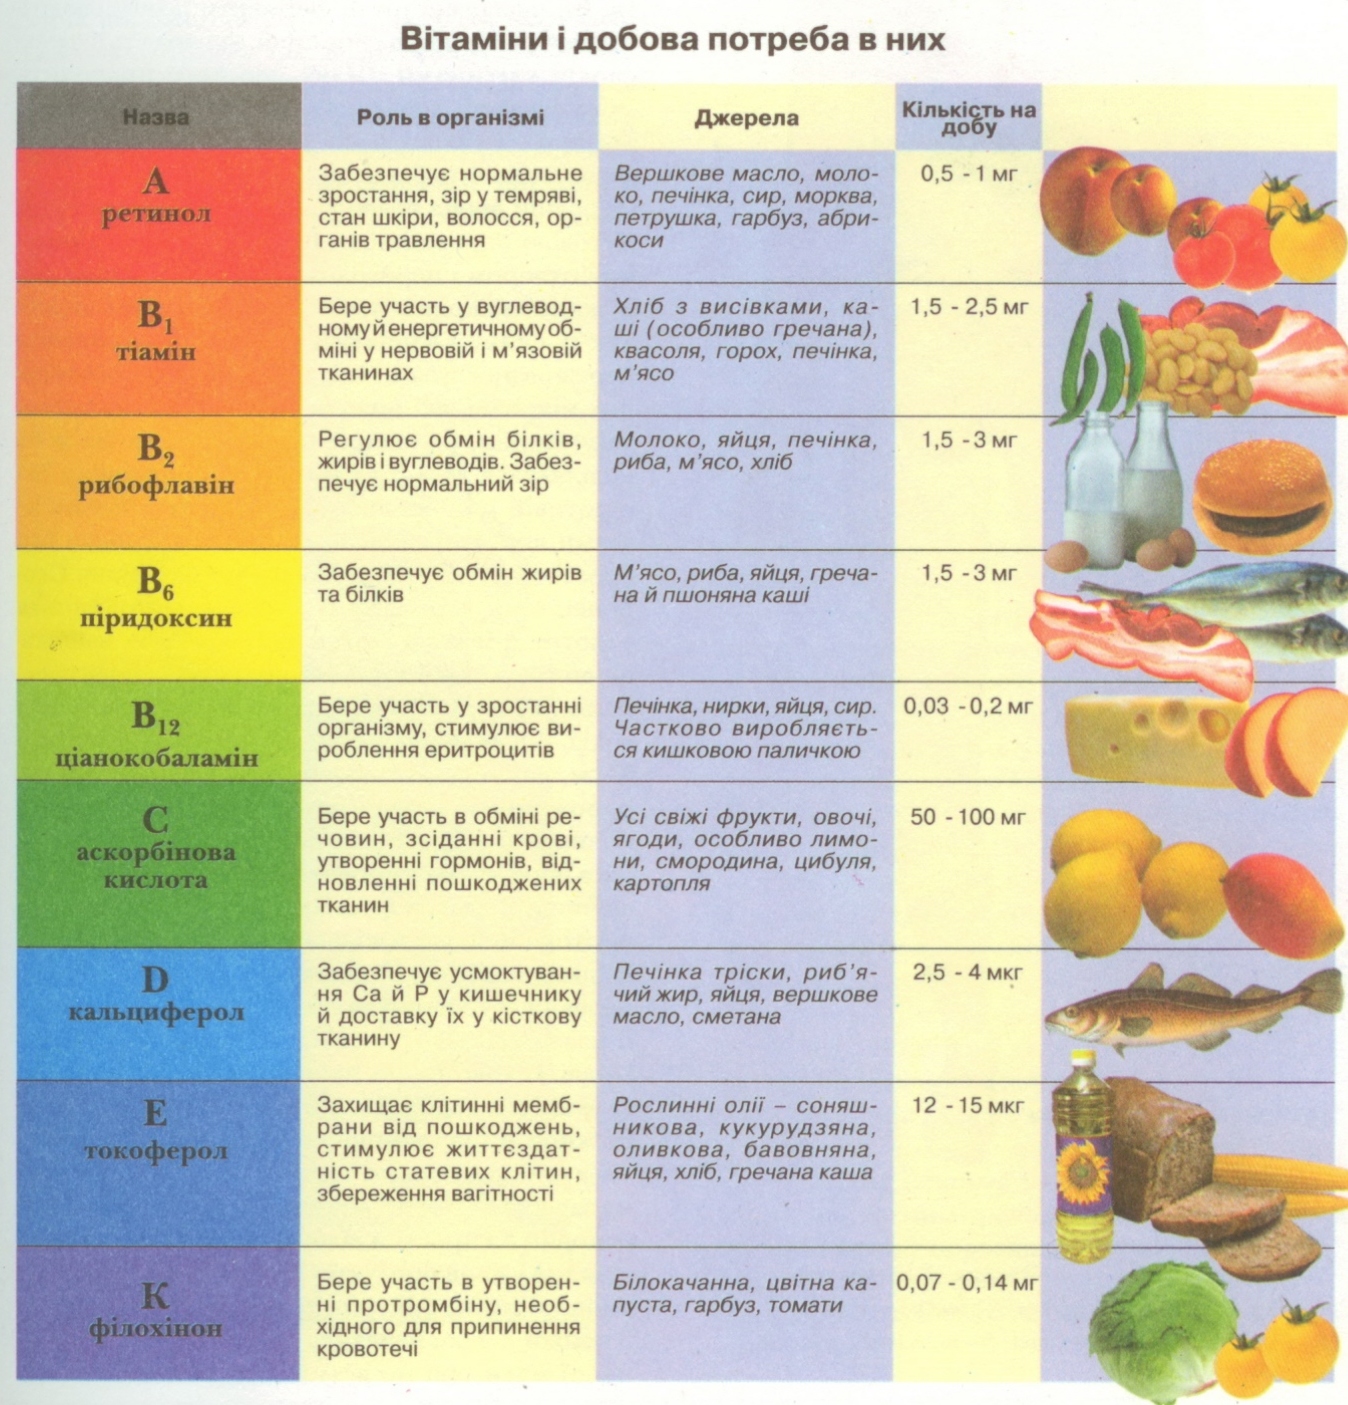 Витамины продукты и заболевания. Витамины таблица. Тамблица АРОО витамины. Витамины и их заболевания таблица. Таблица витамины продукты заболевания.